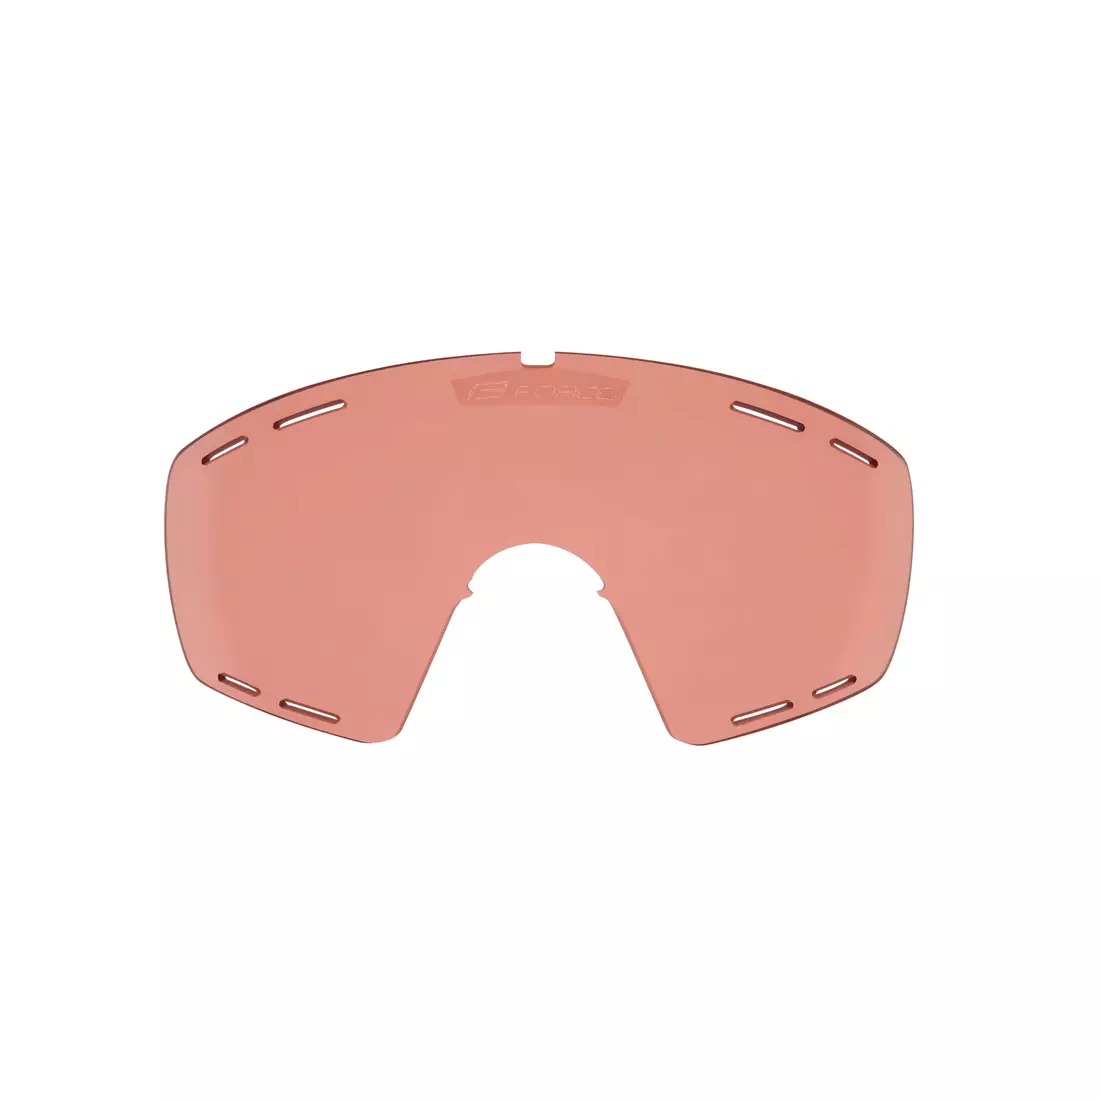 FORCE vyměnitelné čočky na brýle OMBRO PLUS 91136